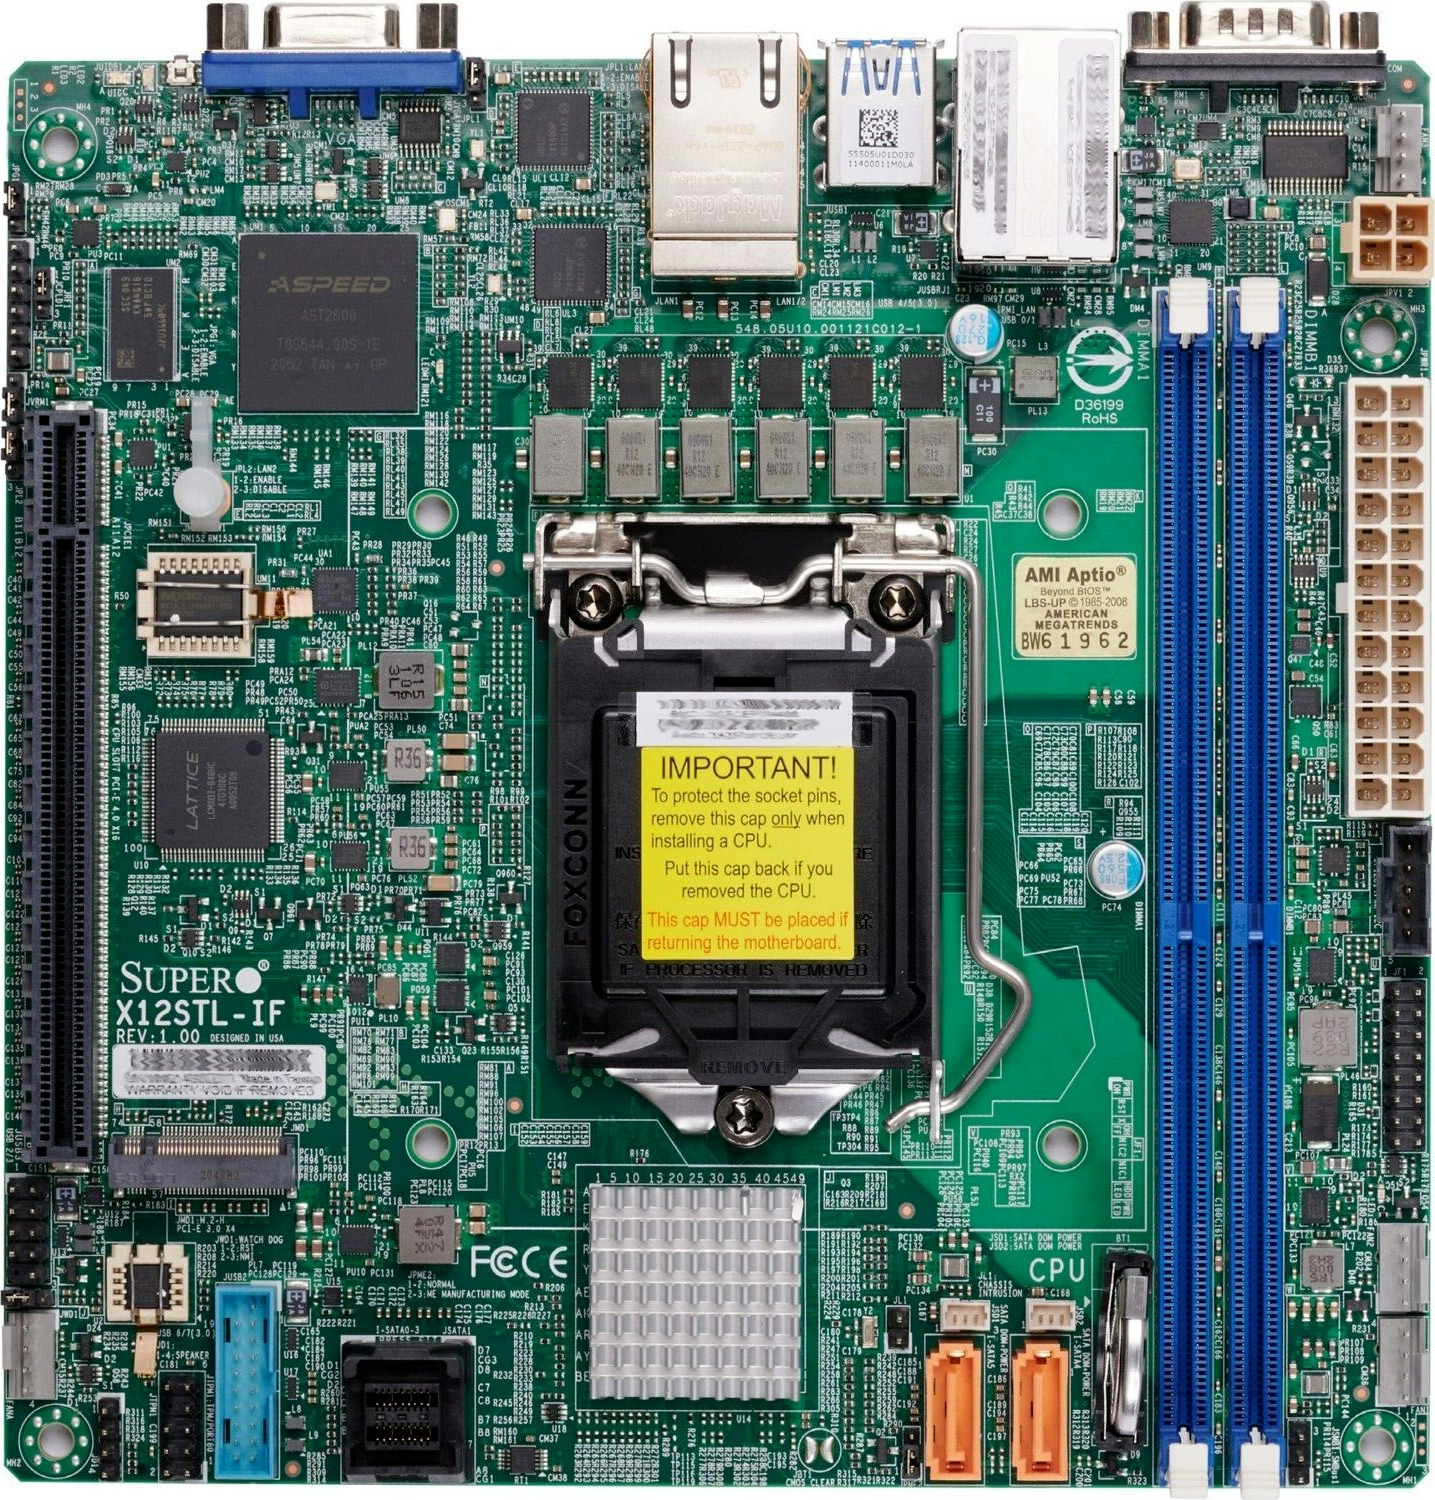 SUPERMICRO Mini ITX Server / Workstation Motherboard LGA-1200 C252 MBD-X12STL-IF